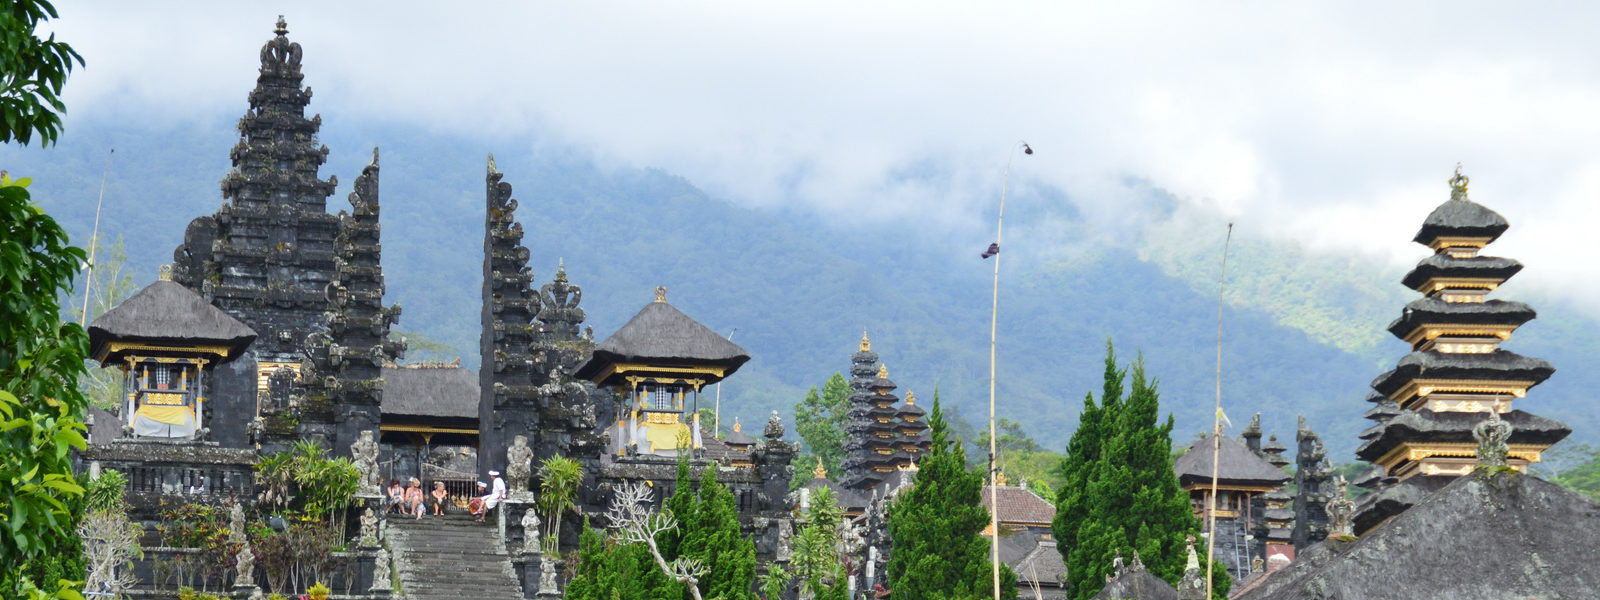 Informationen zu einer Reise nach Bali